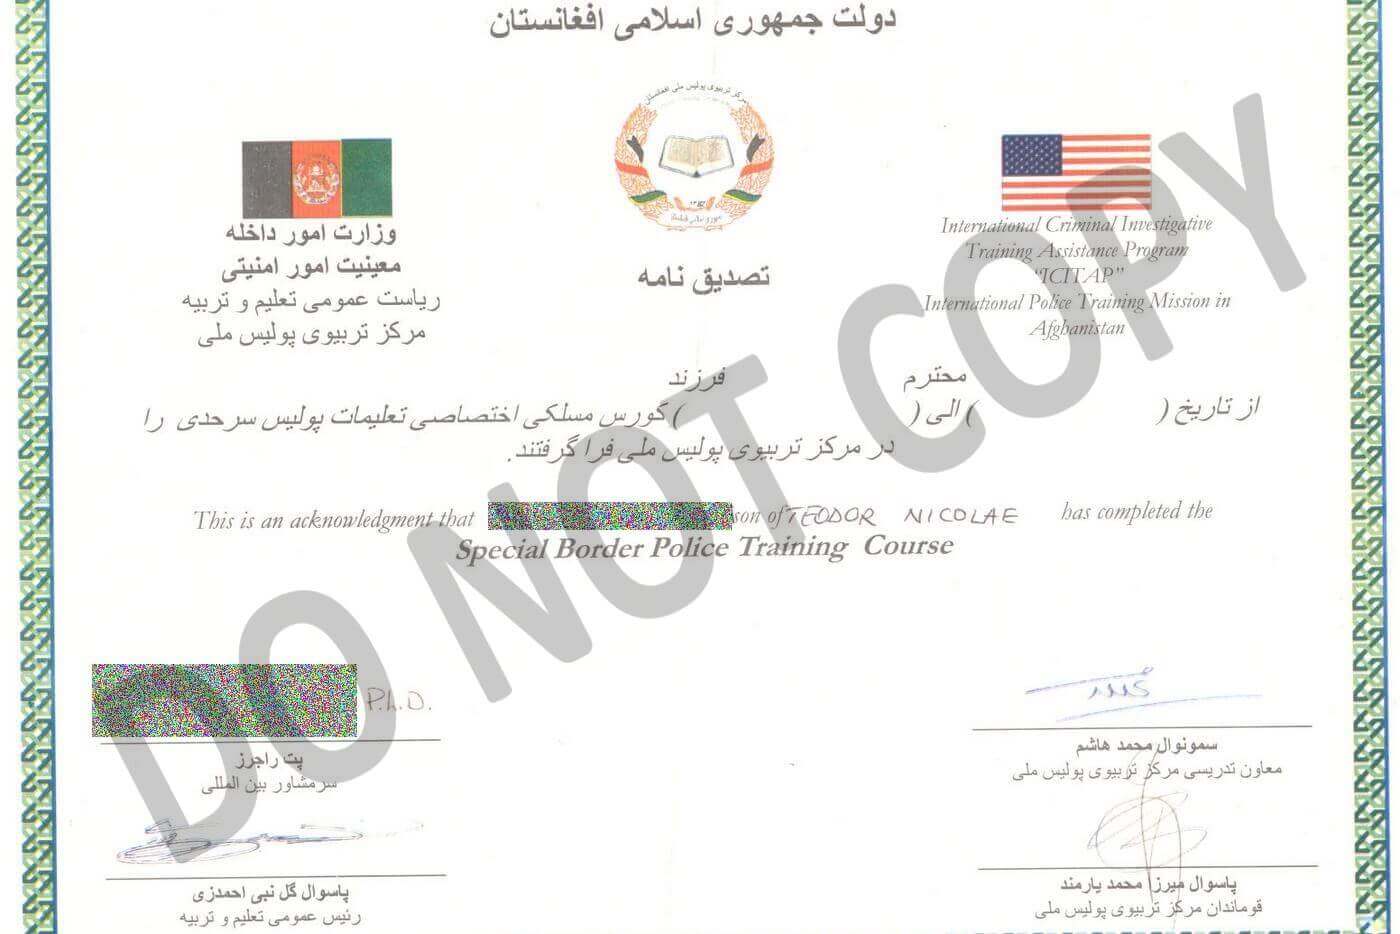 certificates3